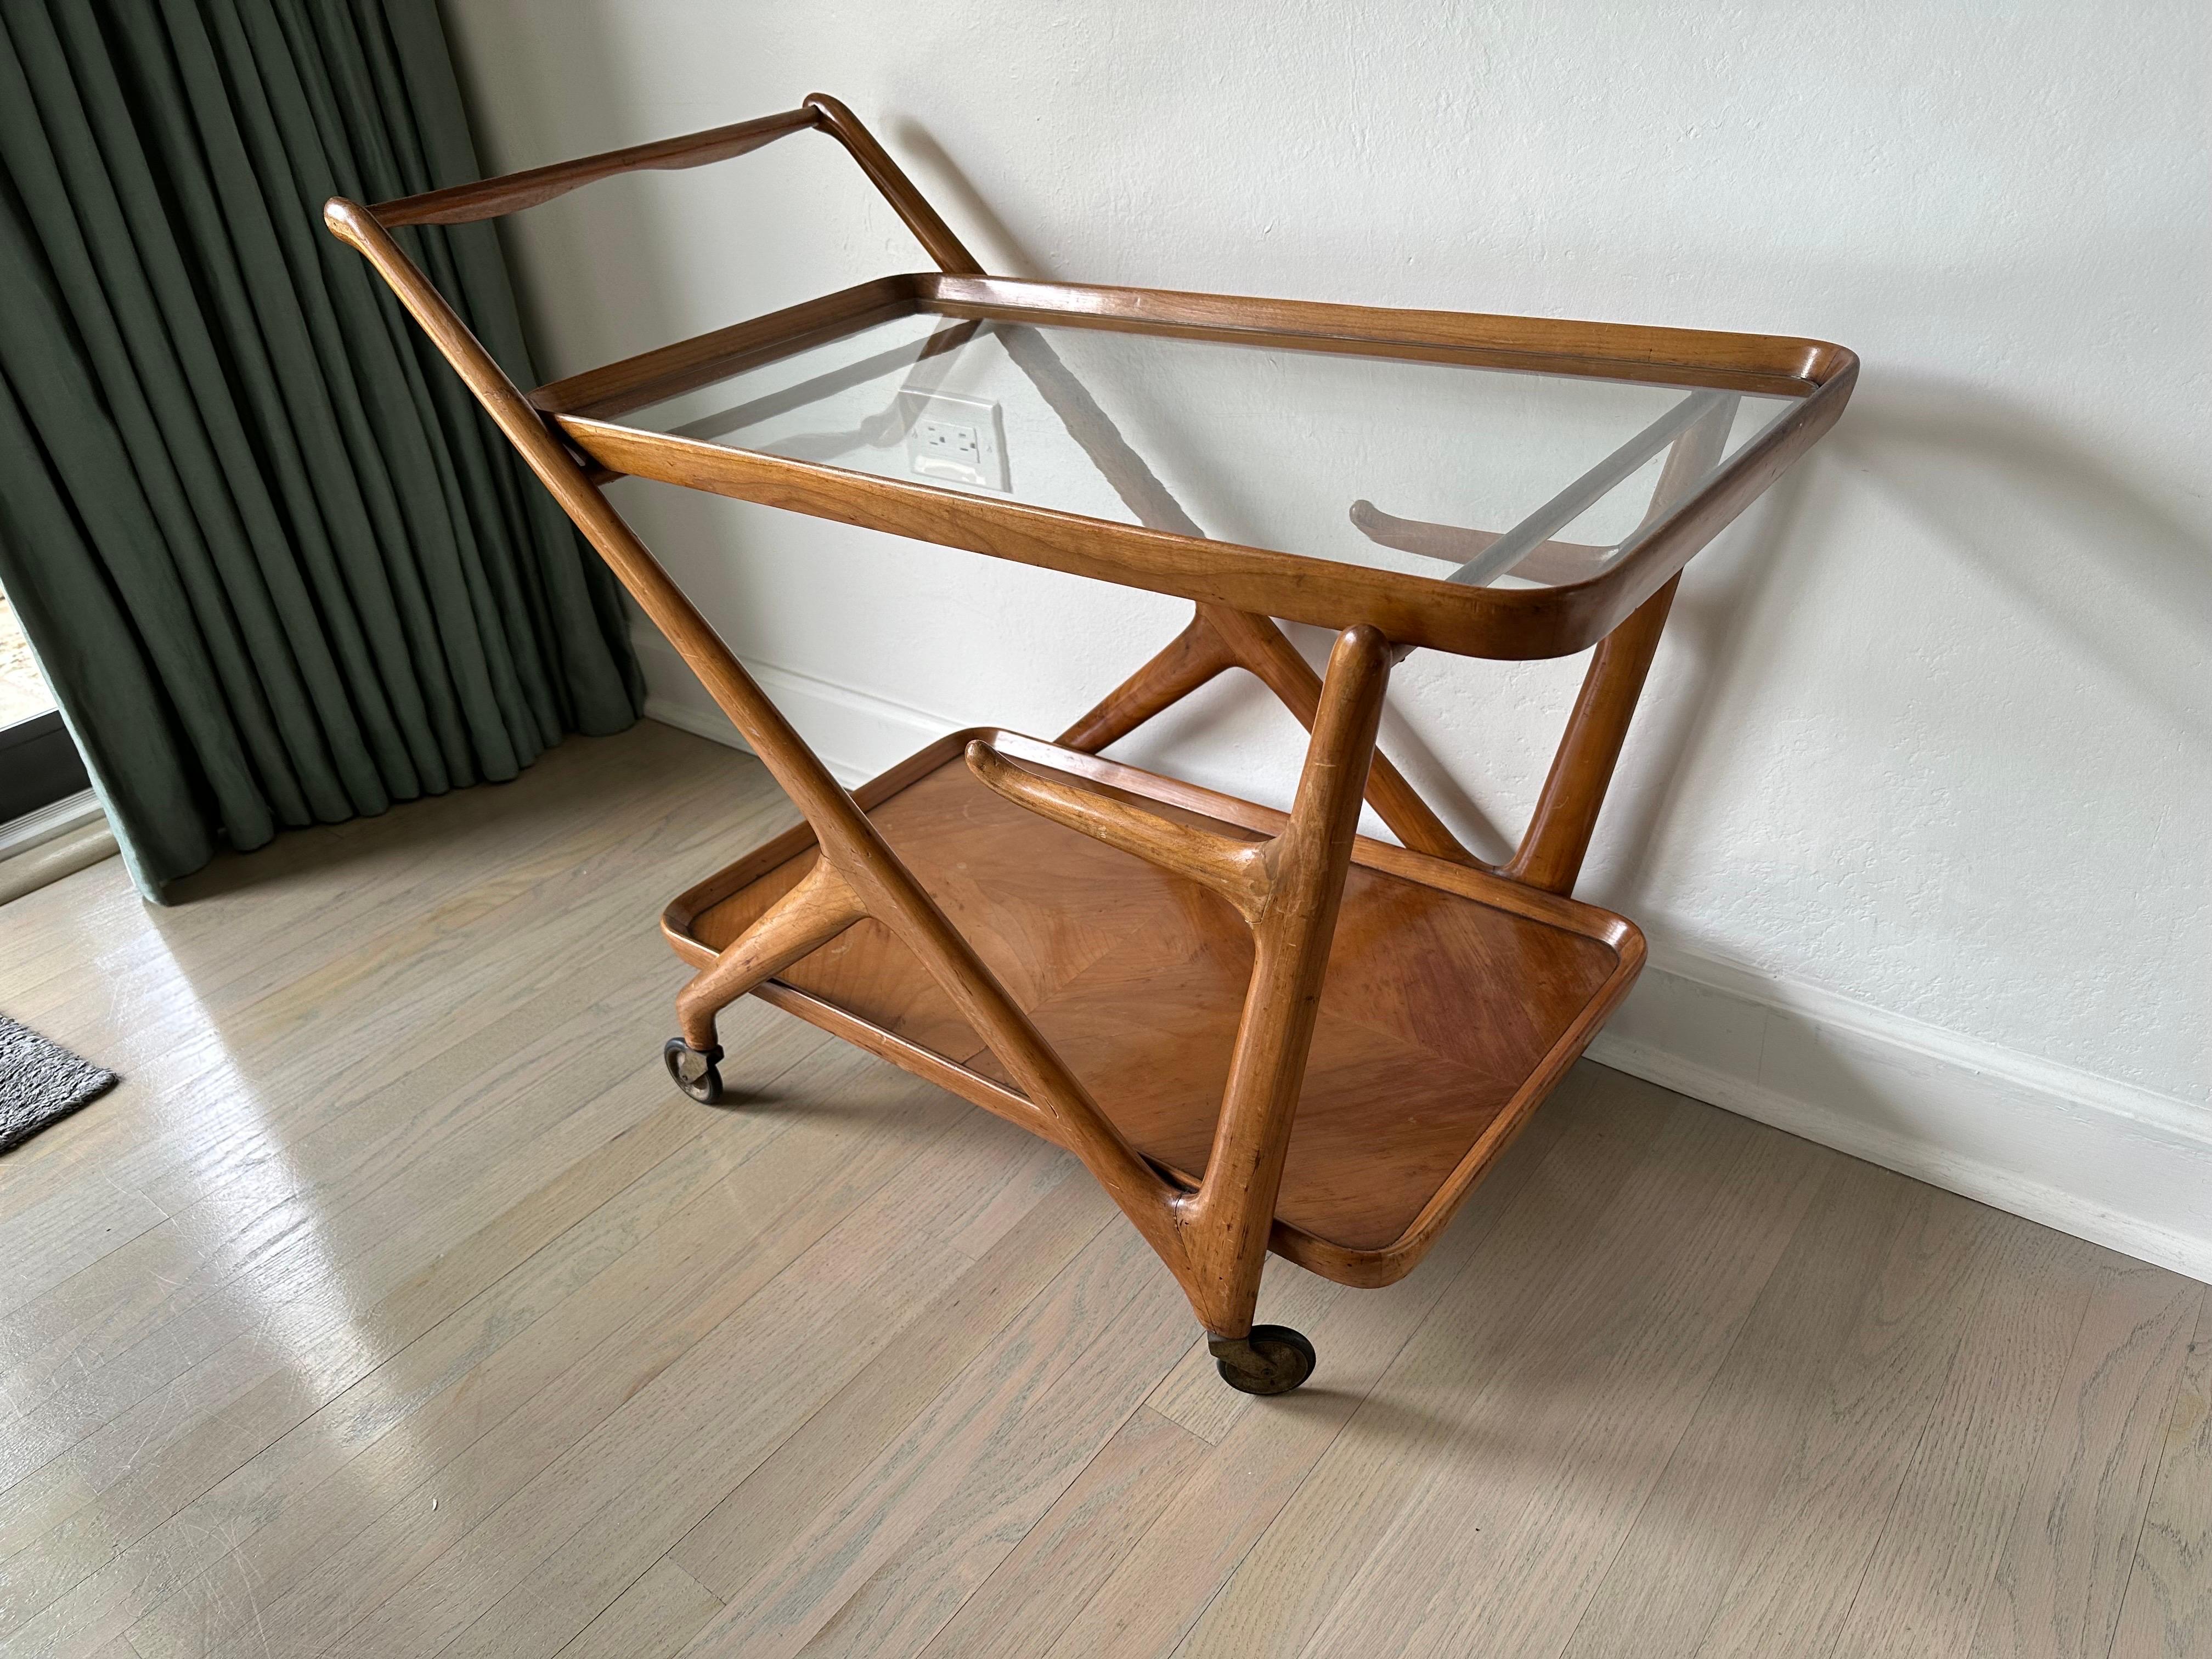 Voici un magnifique chariot de bar/chariot à thé en bois de parquet conçu par Cesar Lacca pour Cassina. Le niveau supérieur en verre et le niveau inférieur en bois, ainsi que les roues qui roulent facilement. Tous originaux ! La hauteur du niveau